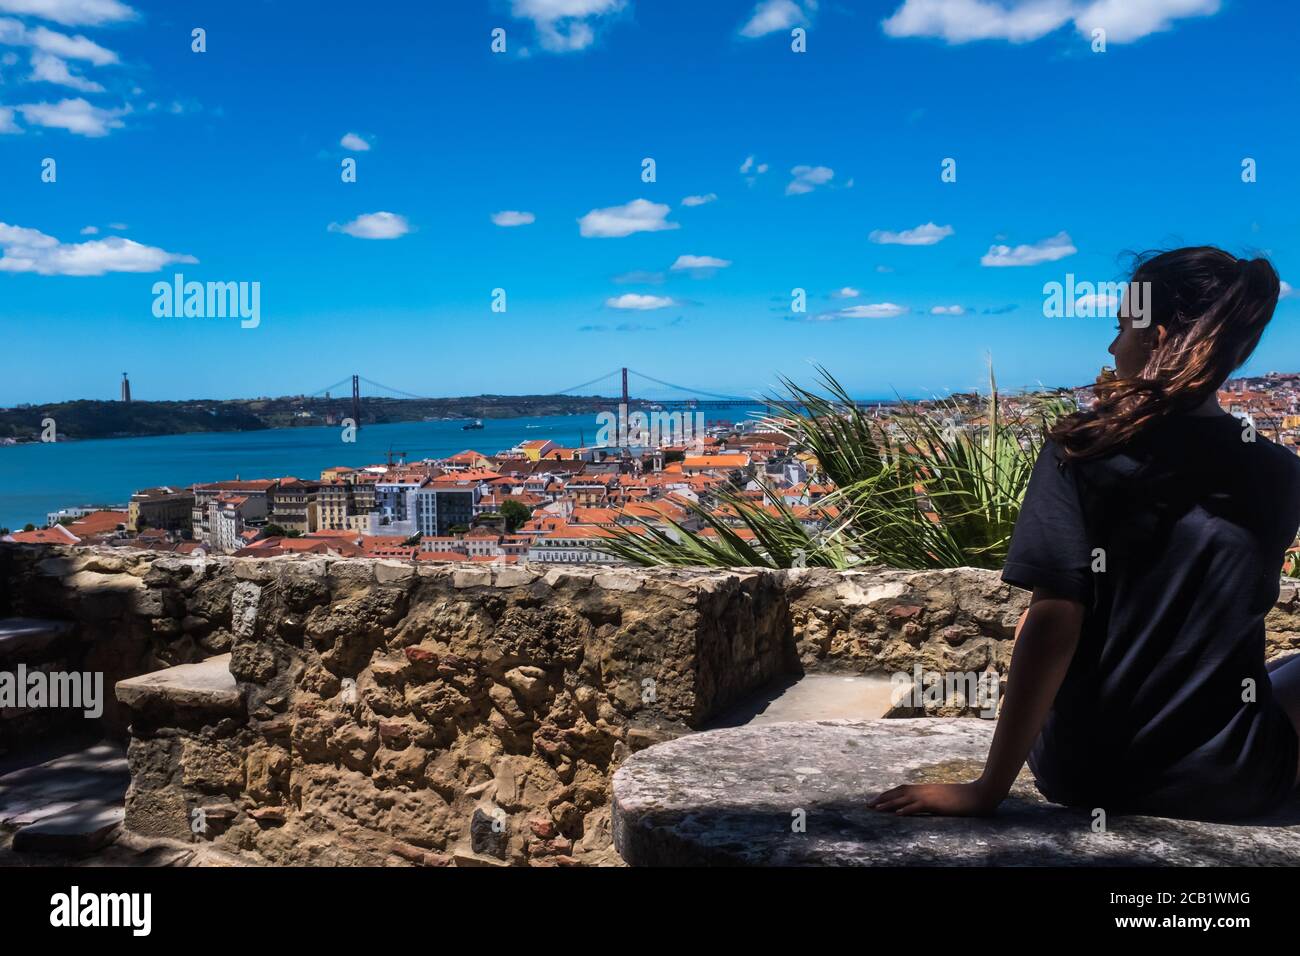 Profil d'une adolescente regardant le paysage urbain de Lisbonne et le Ponte 25 de Abril (pont du 25 avril) en arrière-plan. Banque D'Images